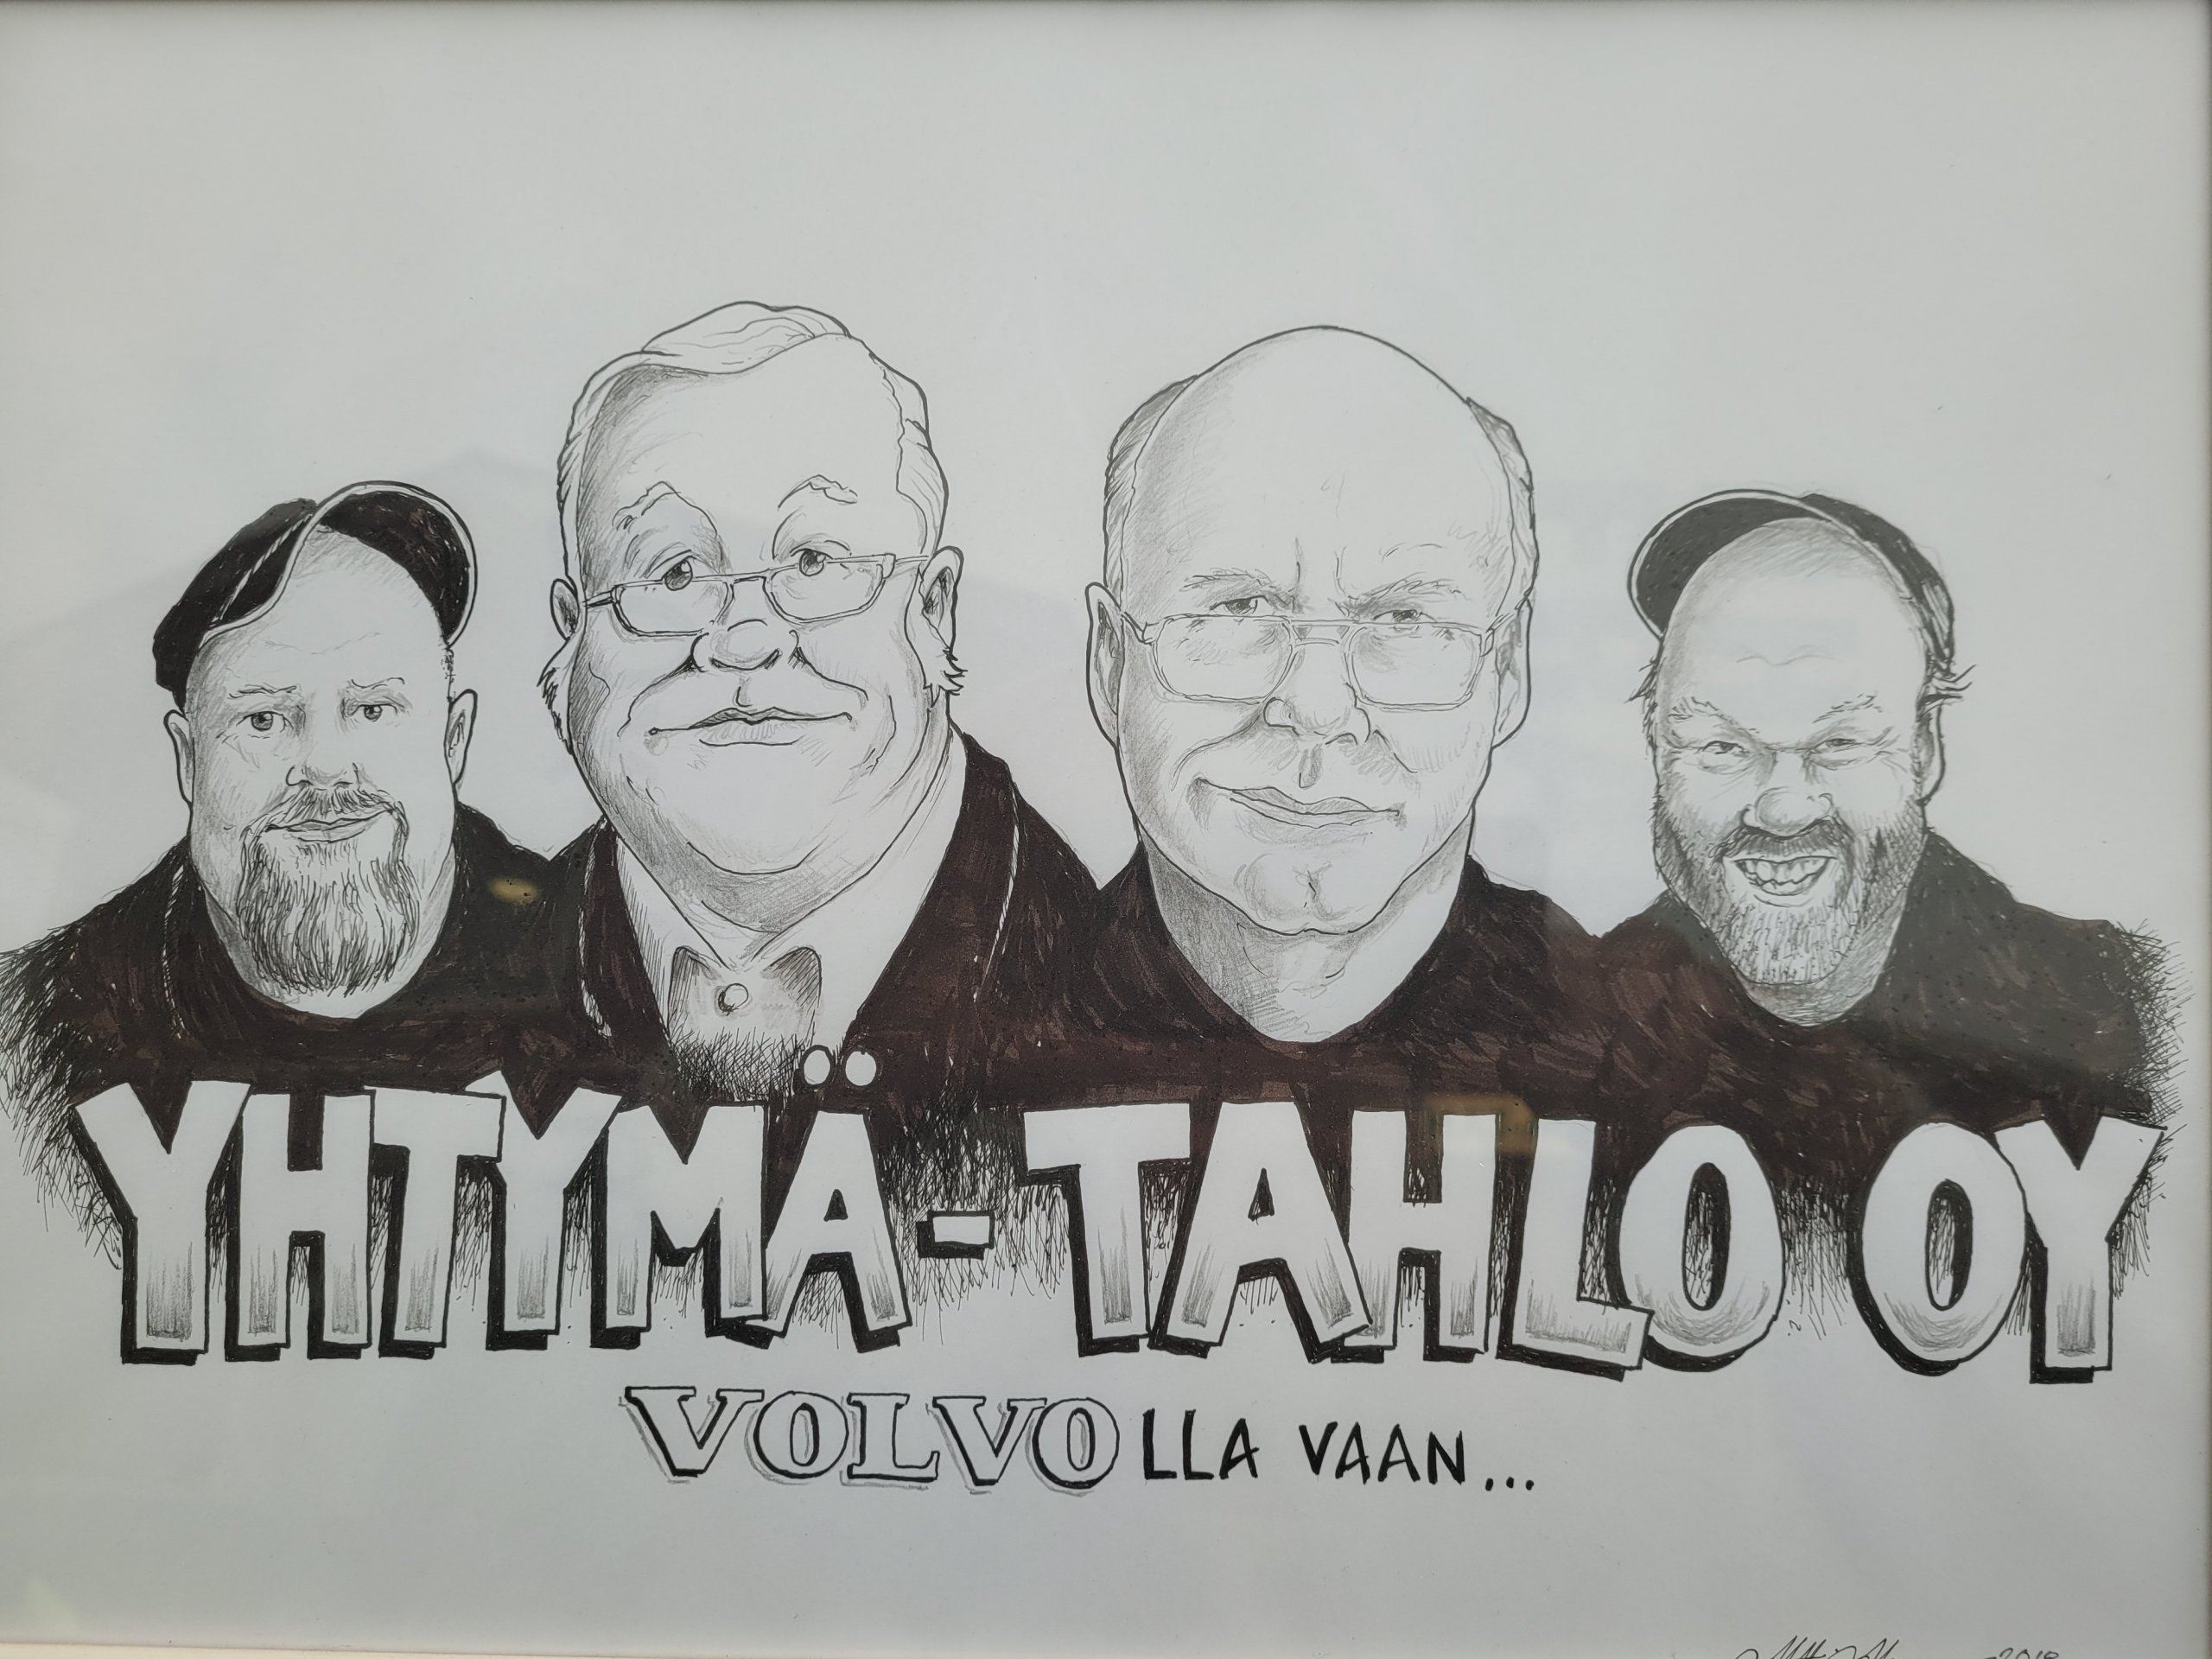 Jarmo ja Harri Tahlo ovat luoneet Yhtymä-Tahlo Oy:stä pirkanmaan kuulun perheyrityksen. Nyt 54 vuotta vanhaa yritystä johtavat Marko ja Tero Tahlo. (Piirros: Yhtymä-Tahlo Oy)